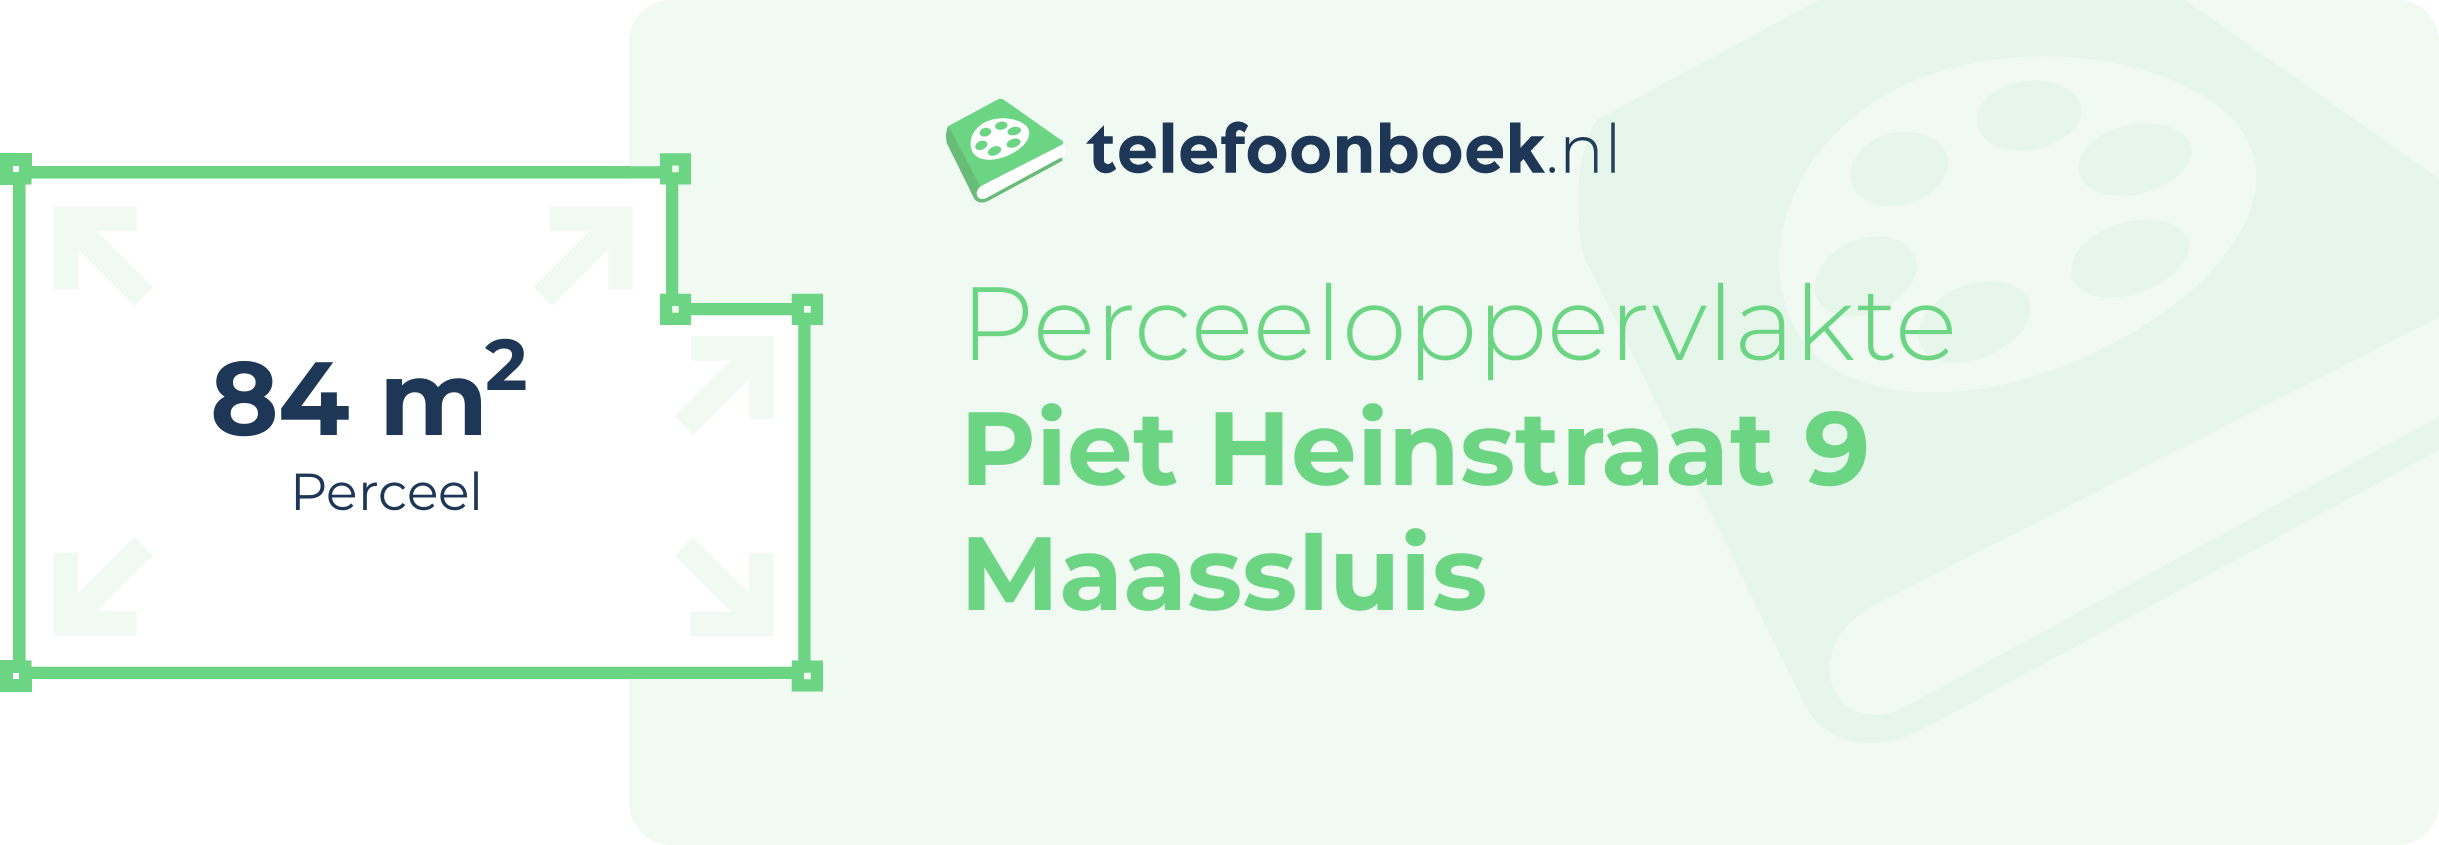 Perceeloppervlakte Piet Heinstraat 9 Maassluis